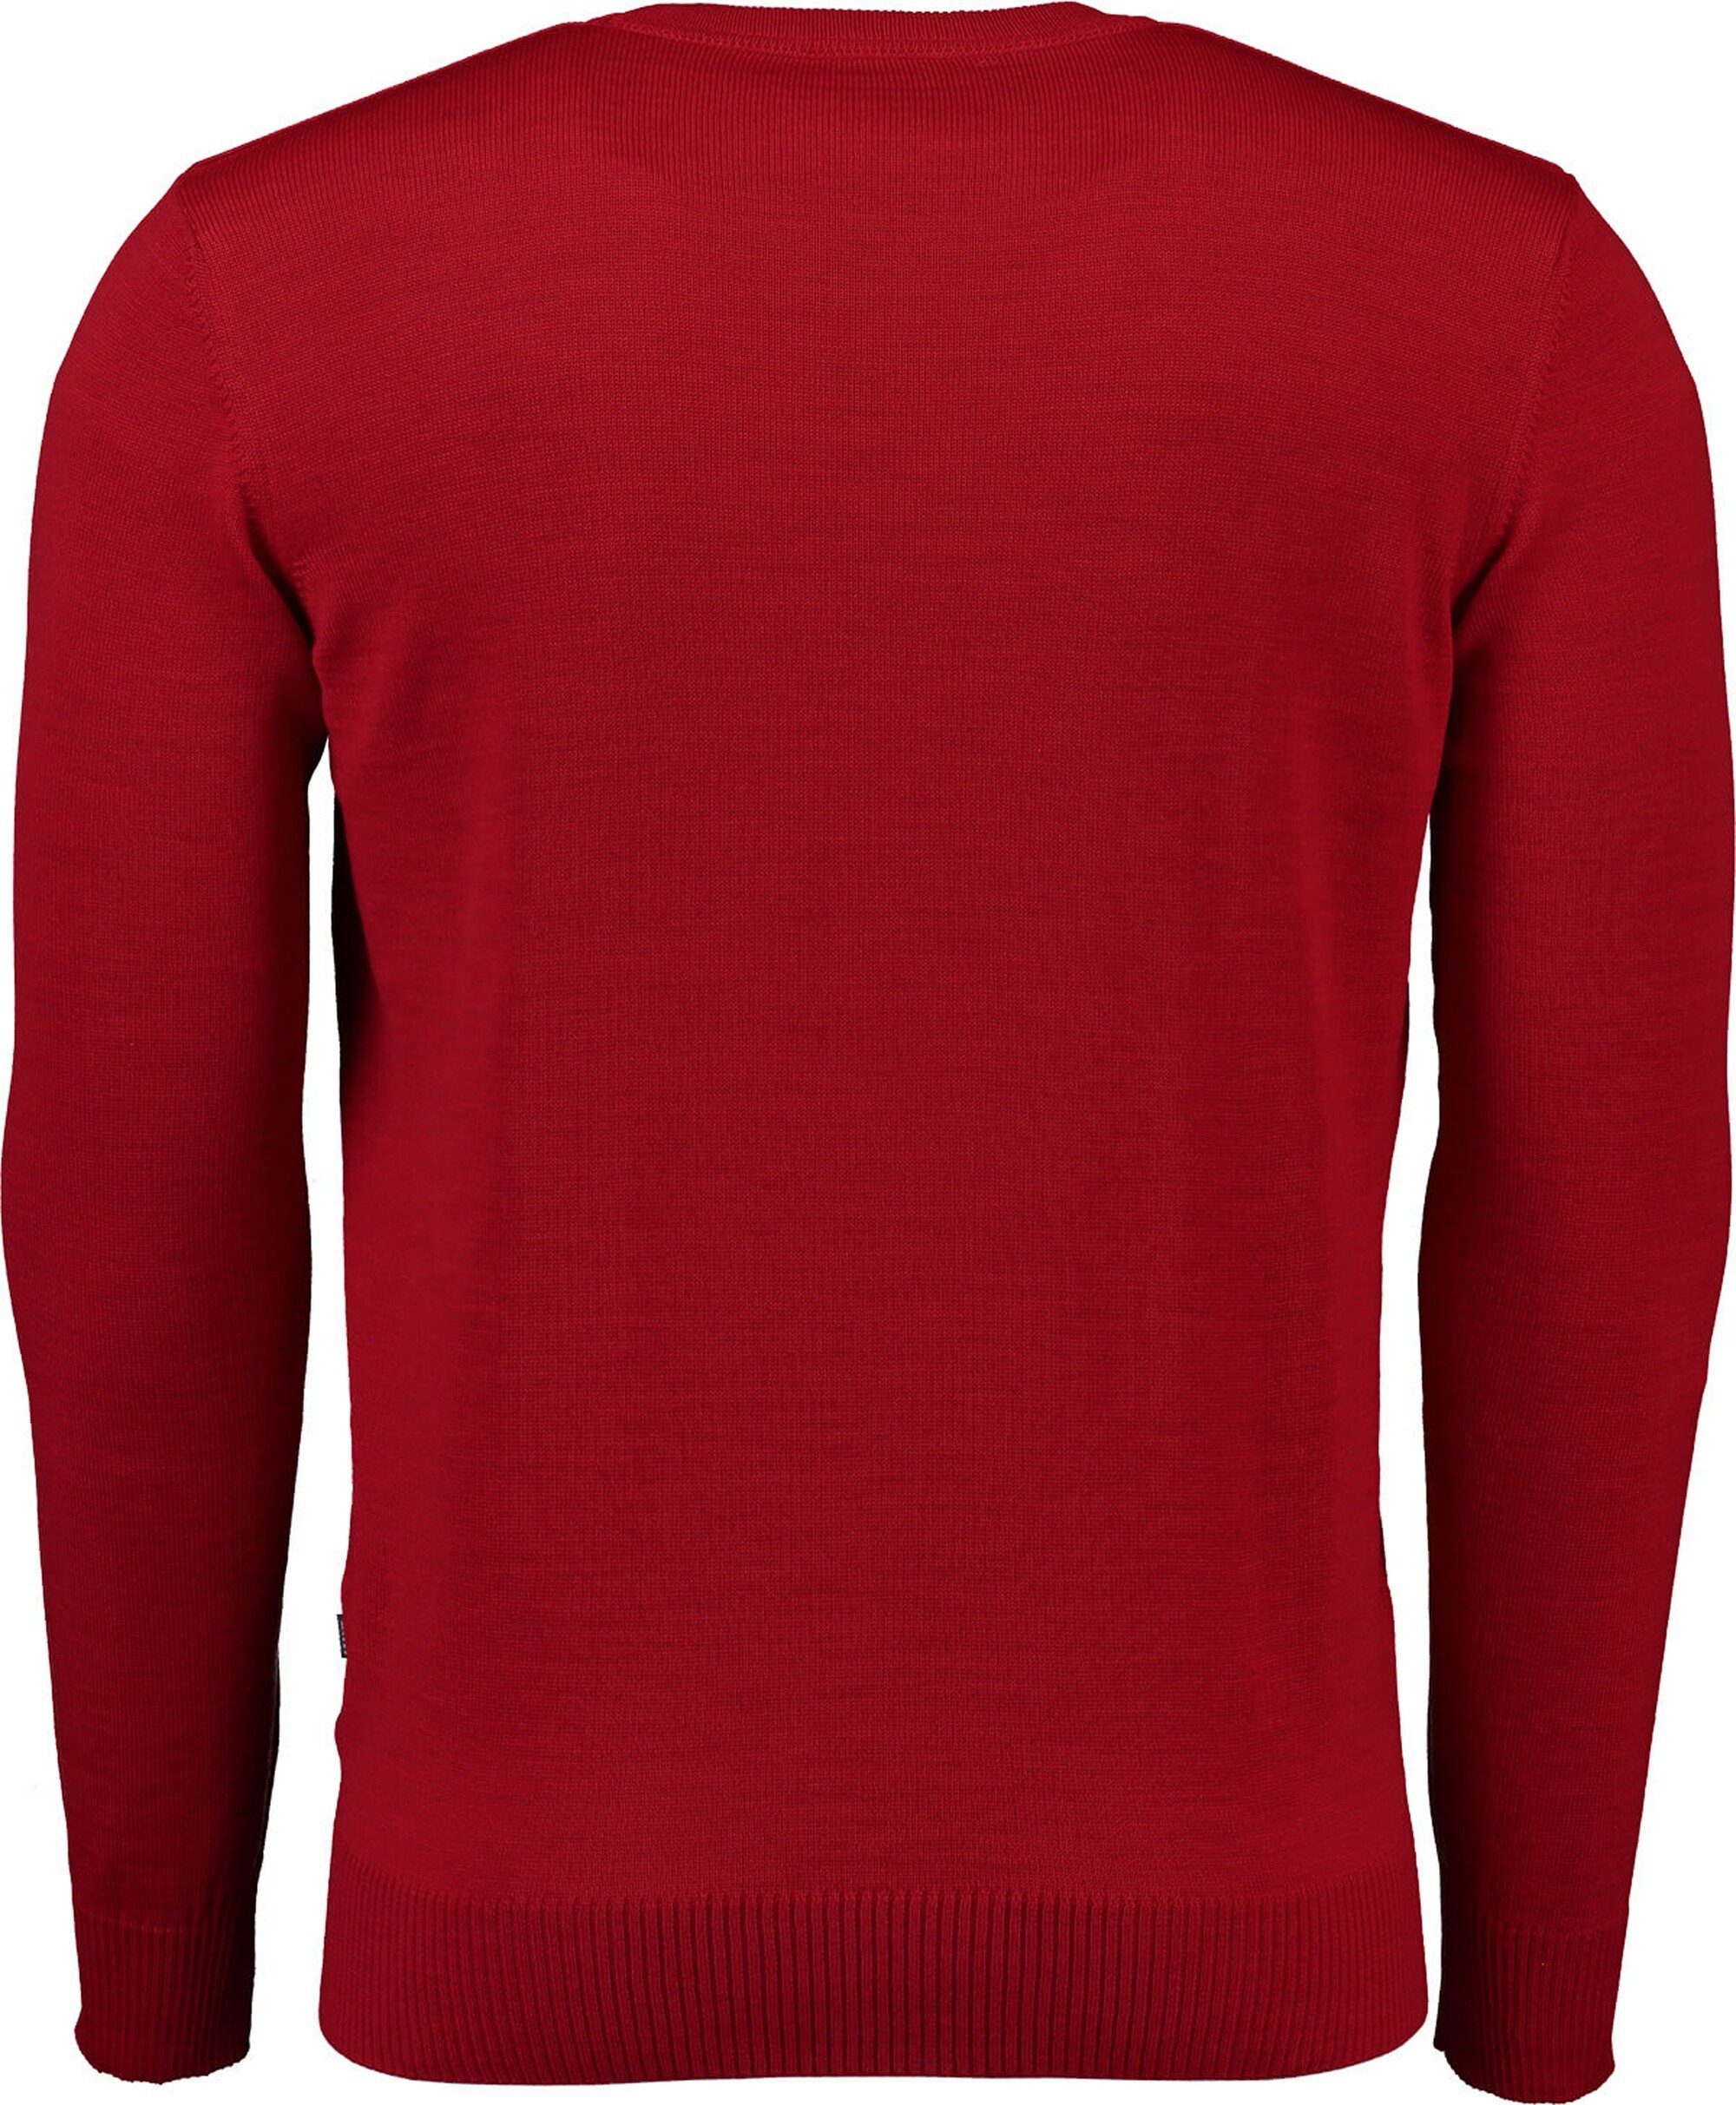 V-Ausschnitt-Pullover aus MAERZ MAERZ rot Merinowolle V-Ausschnitt Pullover Muenchen